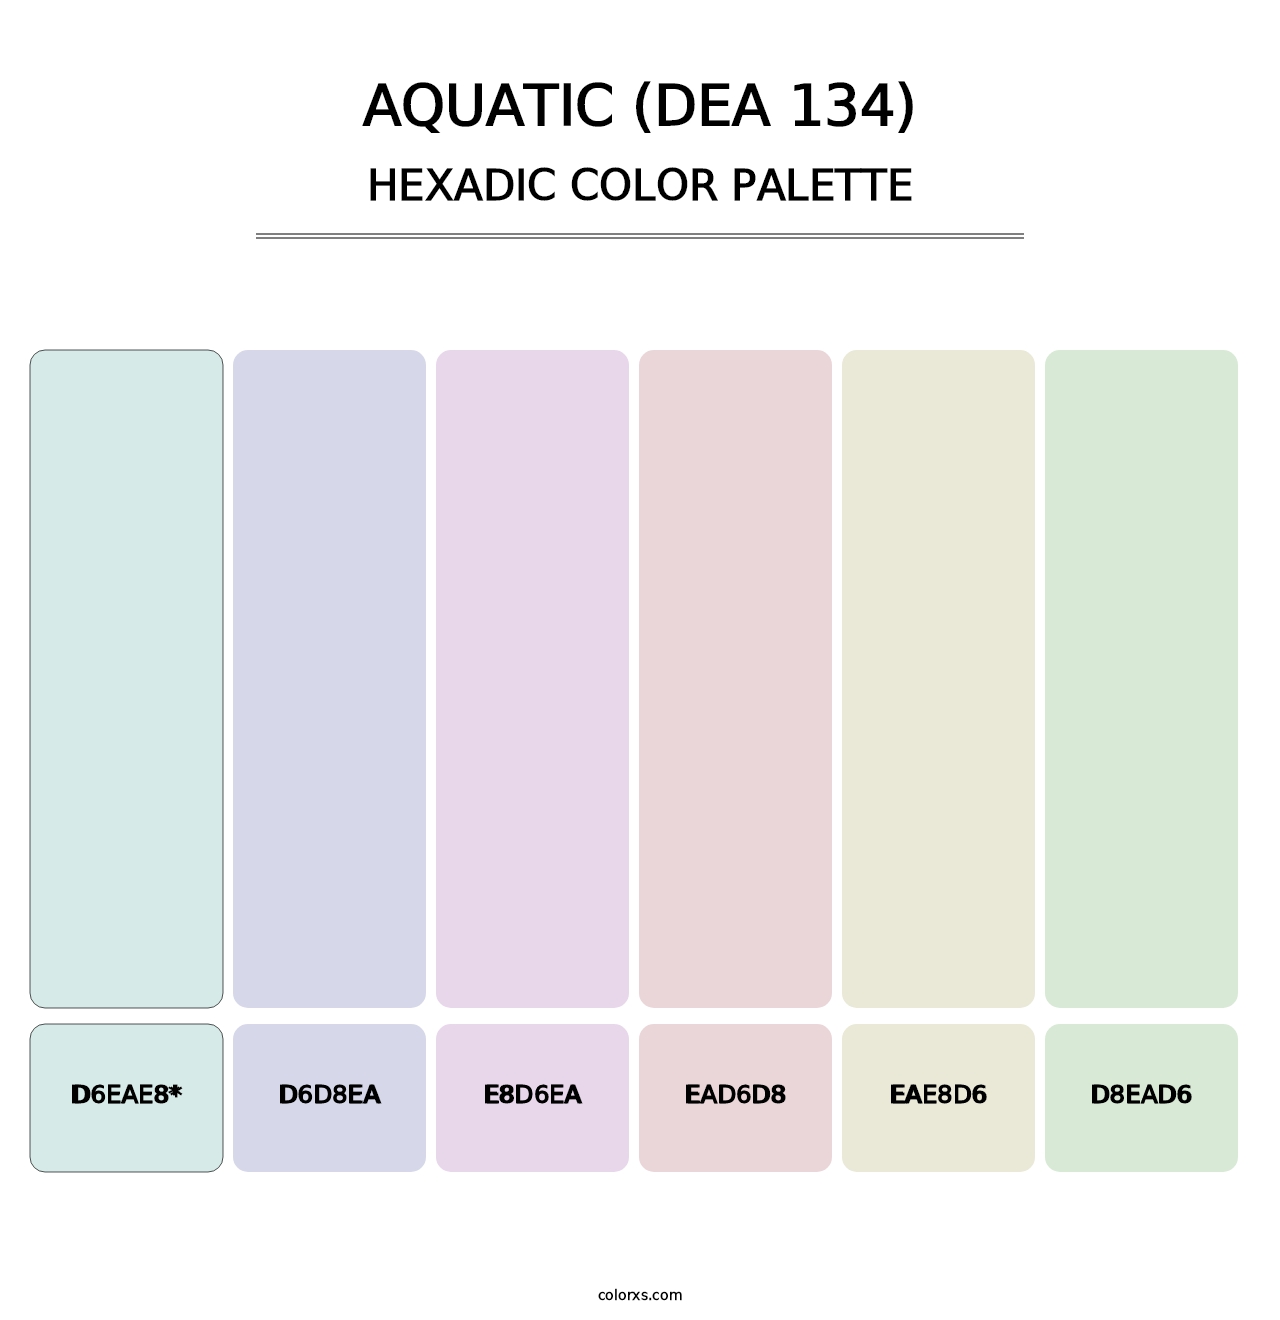 Aquatic (DEA 134) - Hexadic Color Palette